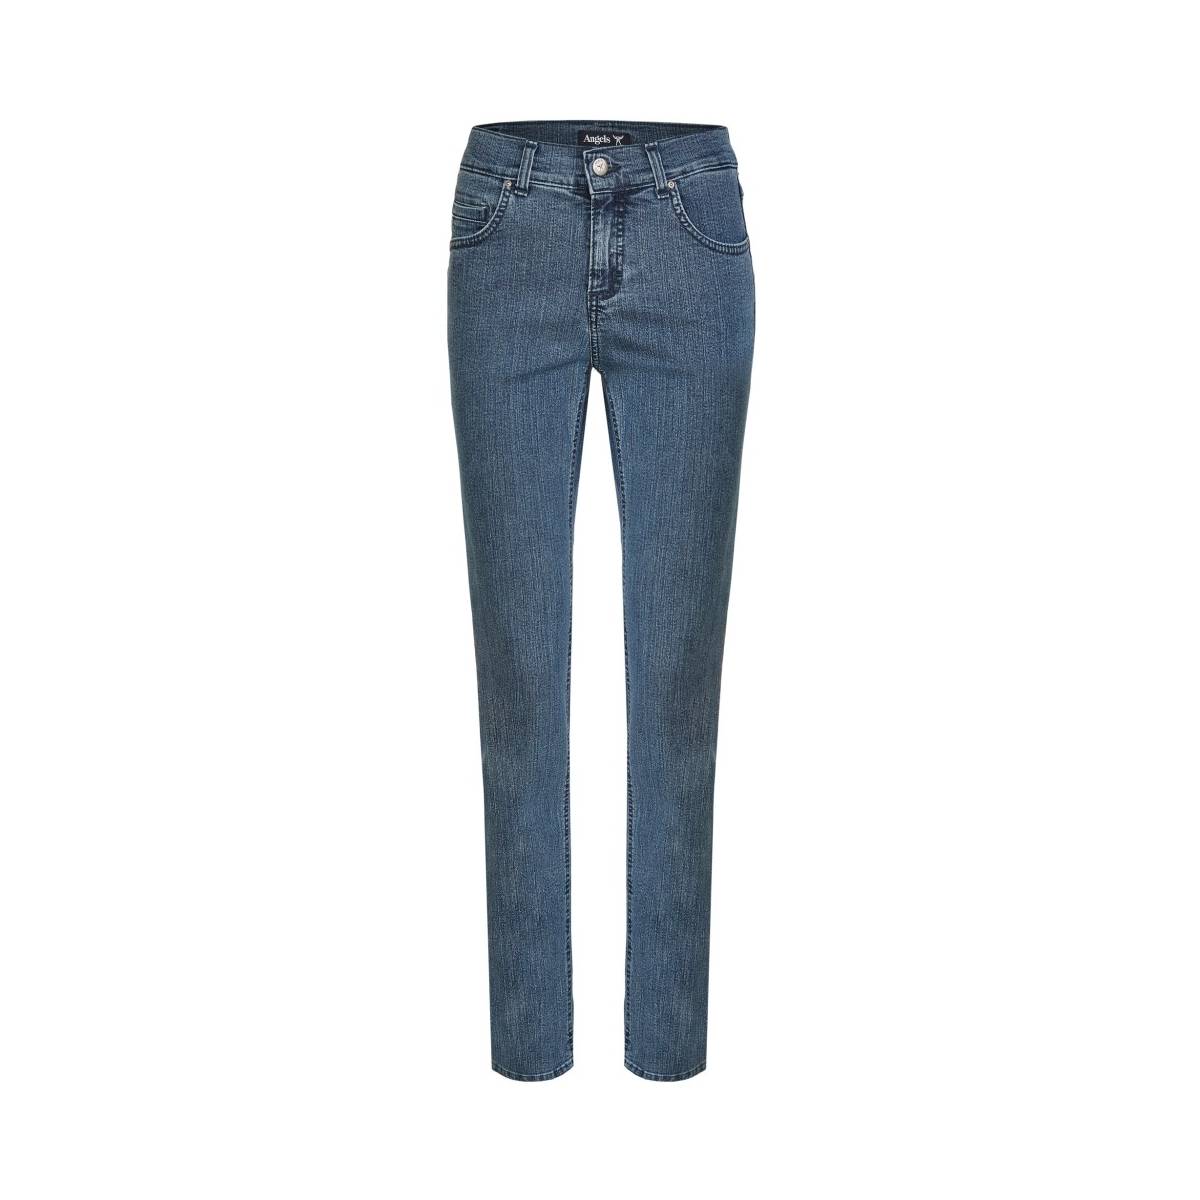 ANGELS  broeken jeans -  model cici/5334 - Dameskleding broeken jeans